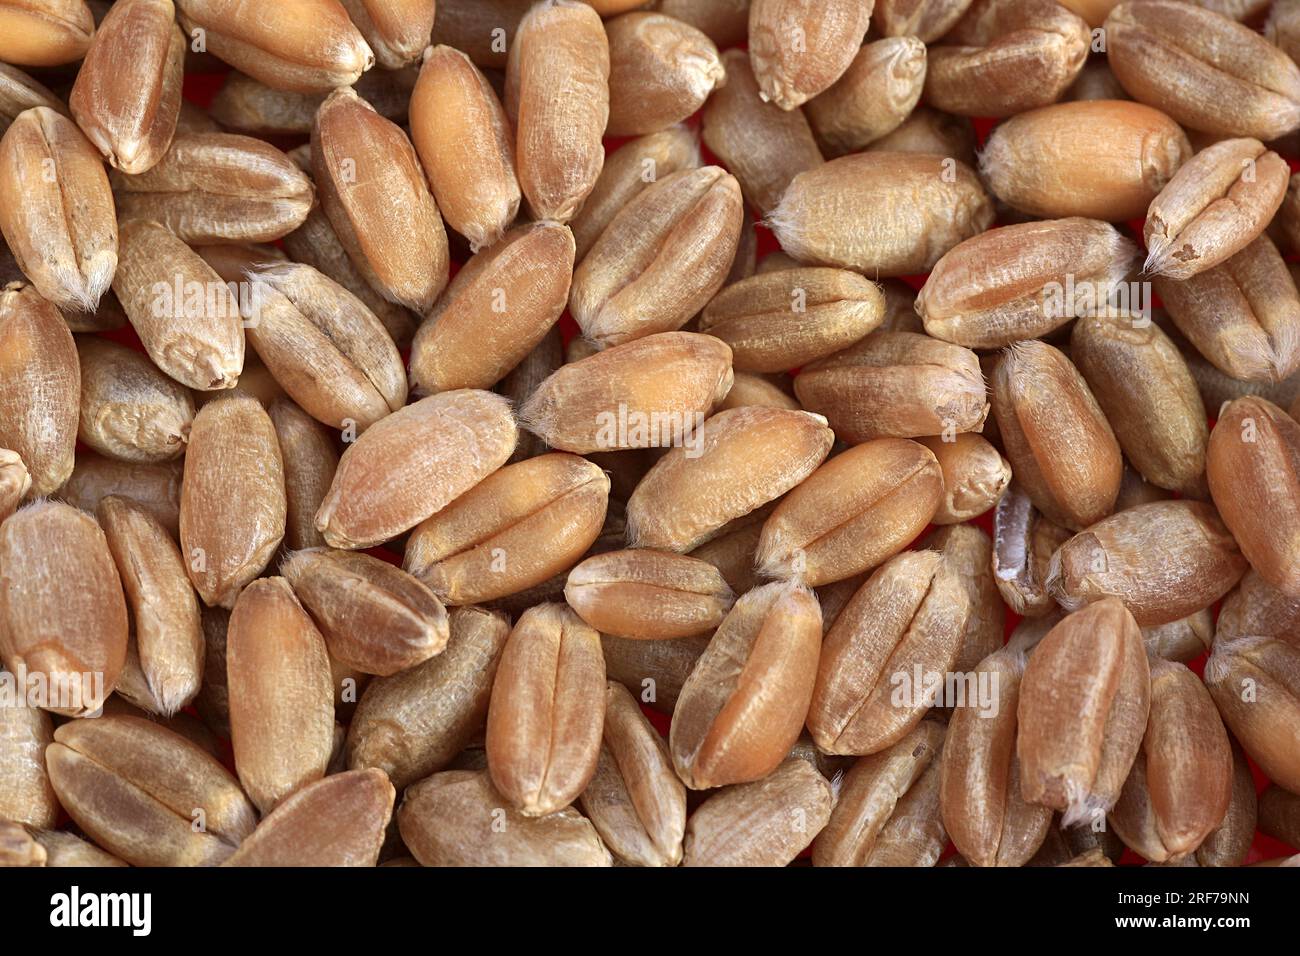 SAAT-Weizen, Weich-Weizen, Weizen (Triticum aestivum), Koerner | pane frumento, grano coltivato (Triticum aestivum), cereali, Foto Stock